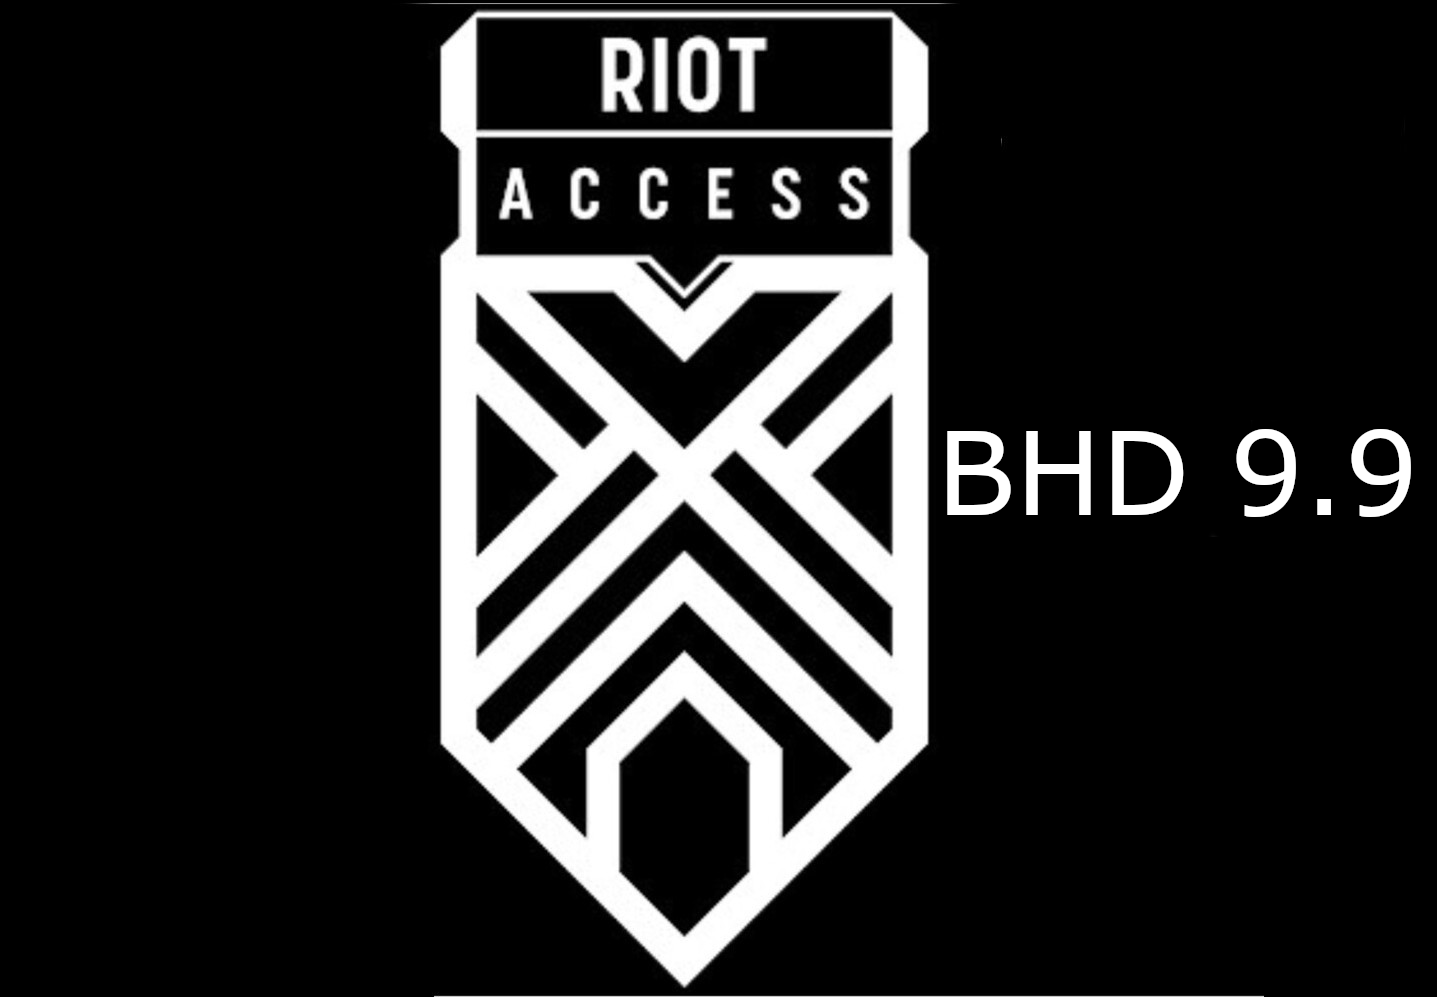 Riot Access 9.9 BHD Code BH